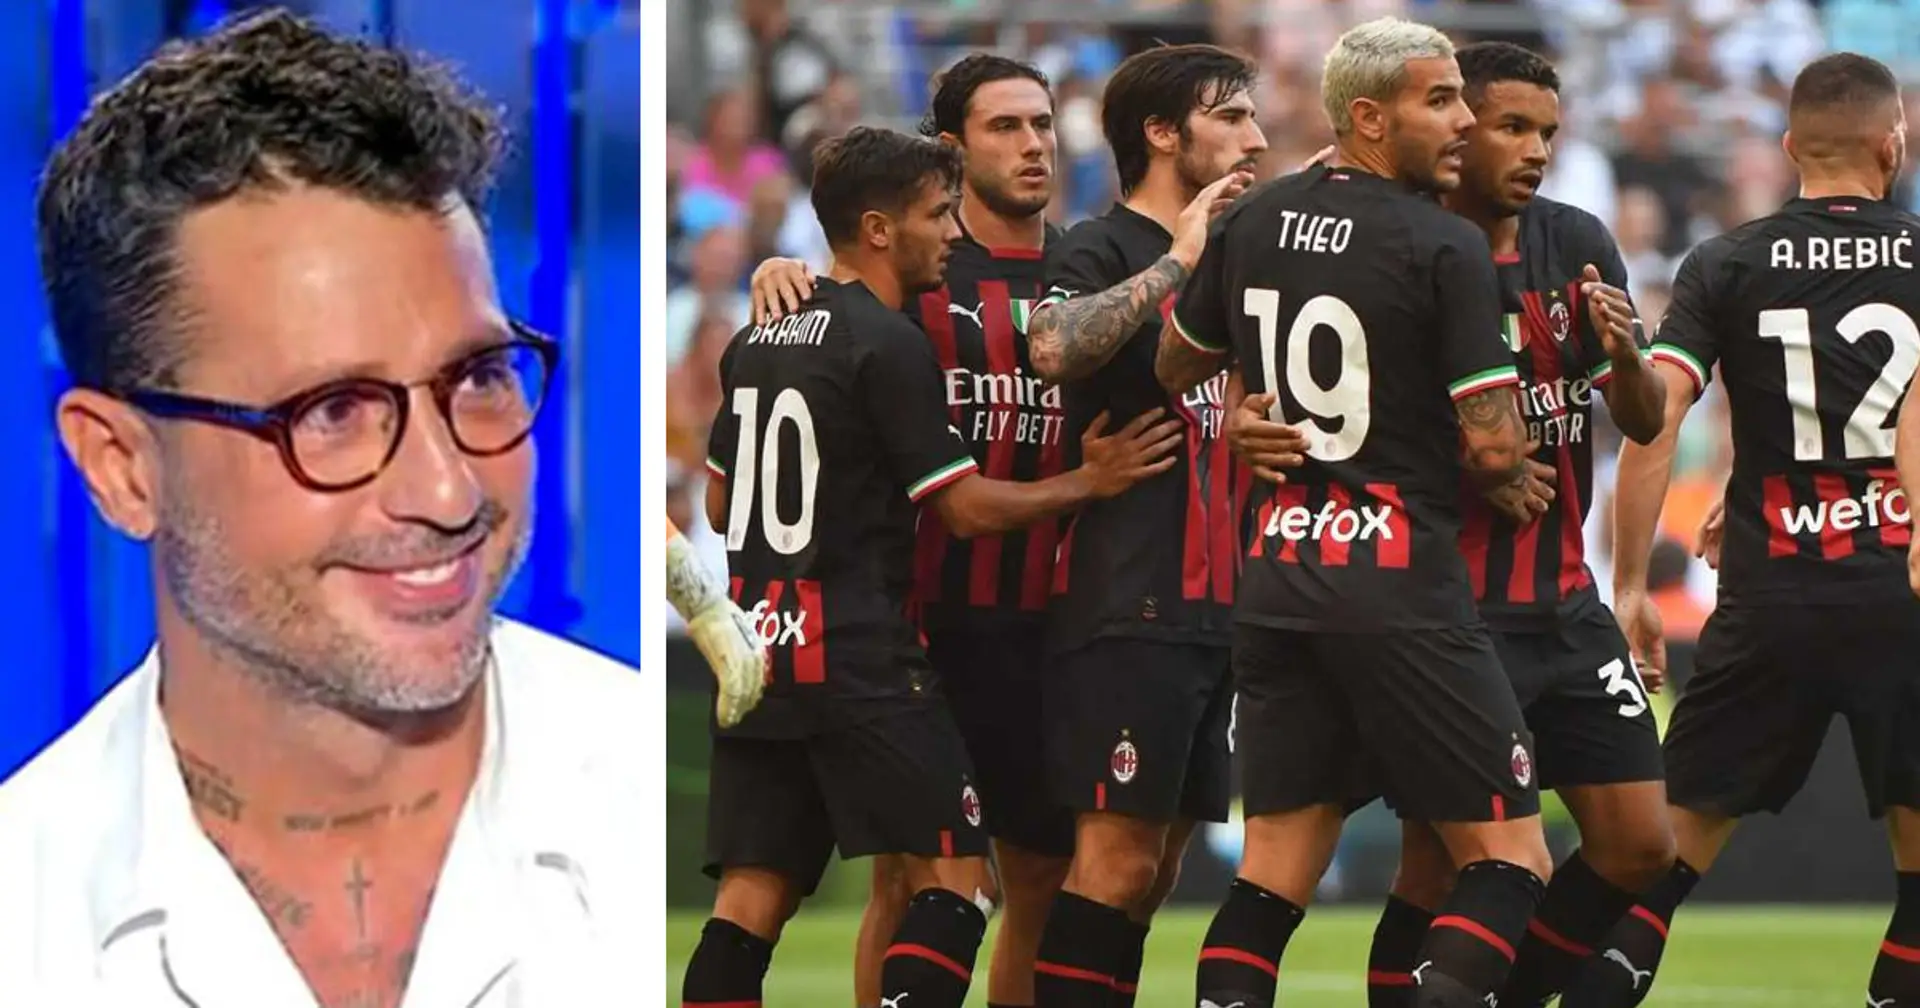 Fabrizio Corona rivela i nomi degli altri due giocatori 'scommettitori': uno è un ex Milan